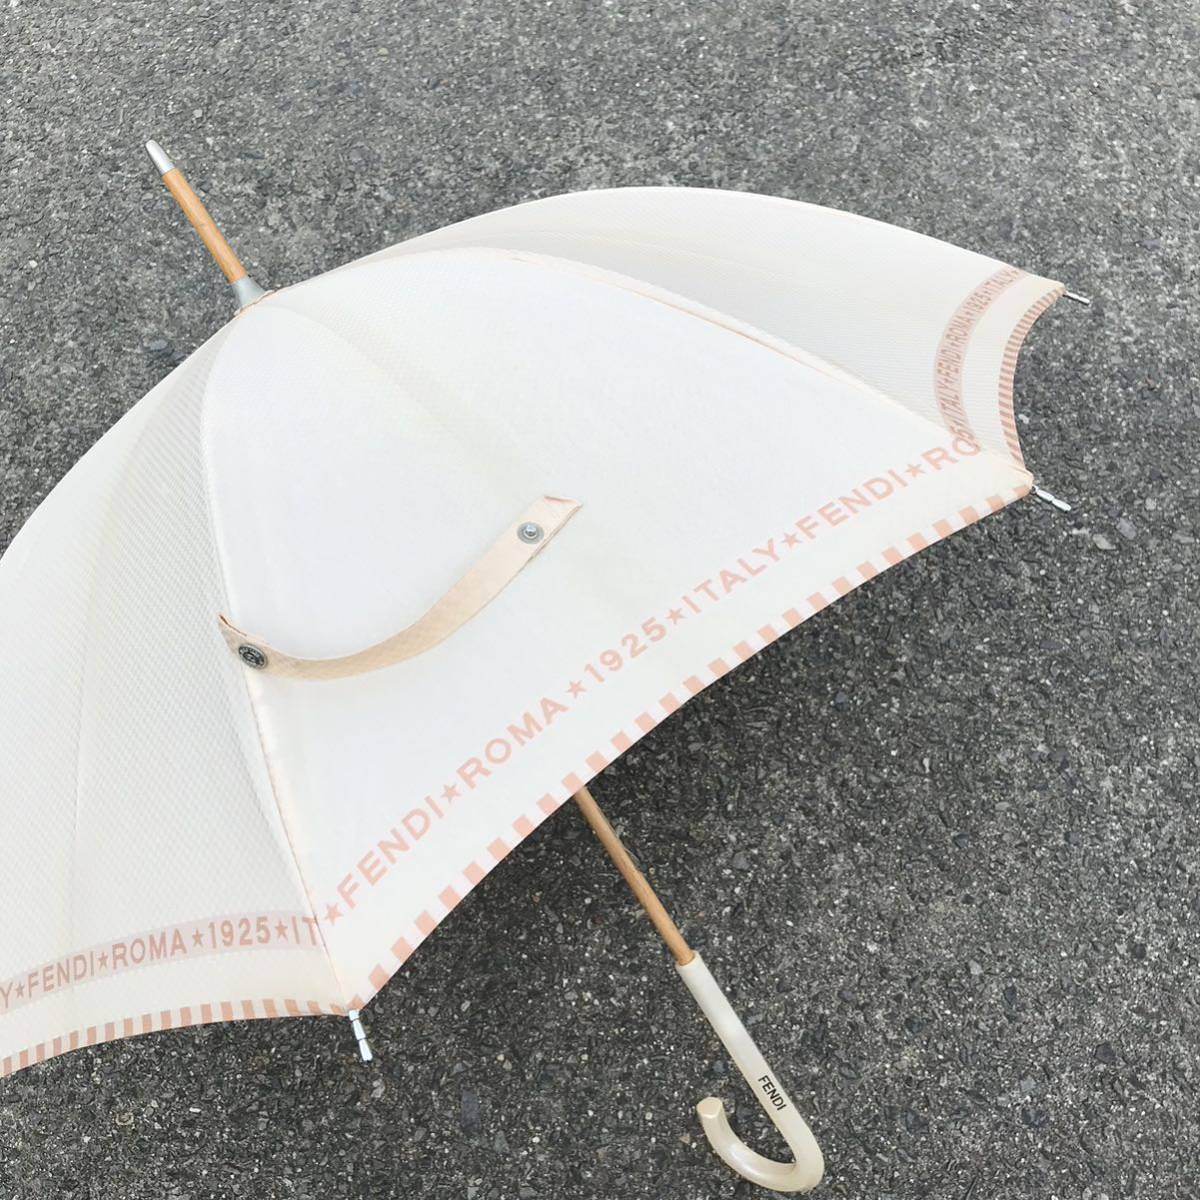 【フェンディ】本物 FENDI 傘 ロゴモチーフ 全長83cm 雨傘 雨具 アンブレラ 長傘 メンズ レディース_画像5